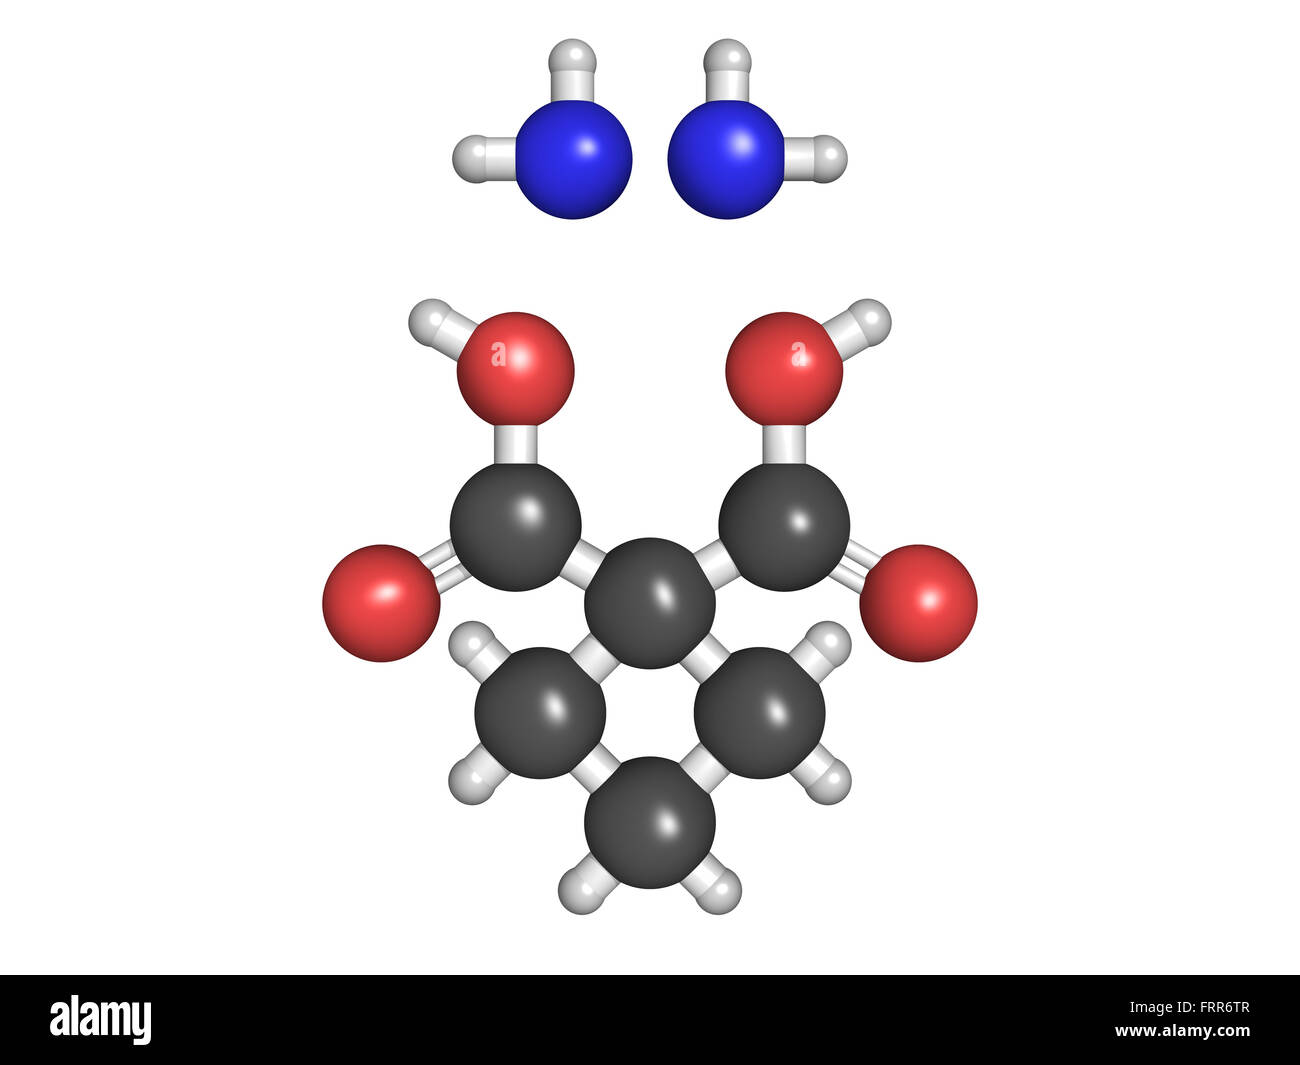 Carboplatin Krebs-Chemotherapie-Medikament, chemische Struktur. Atome werden als Kugeln mit konventionellen Farbkodierung dargestellt. Stockfoto